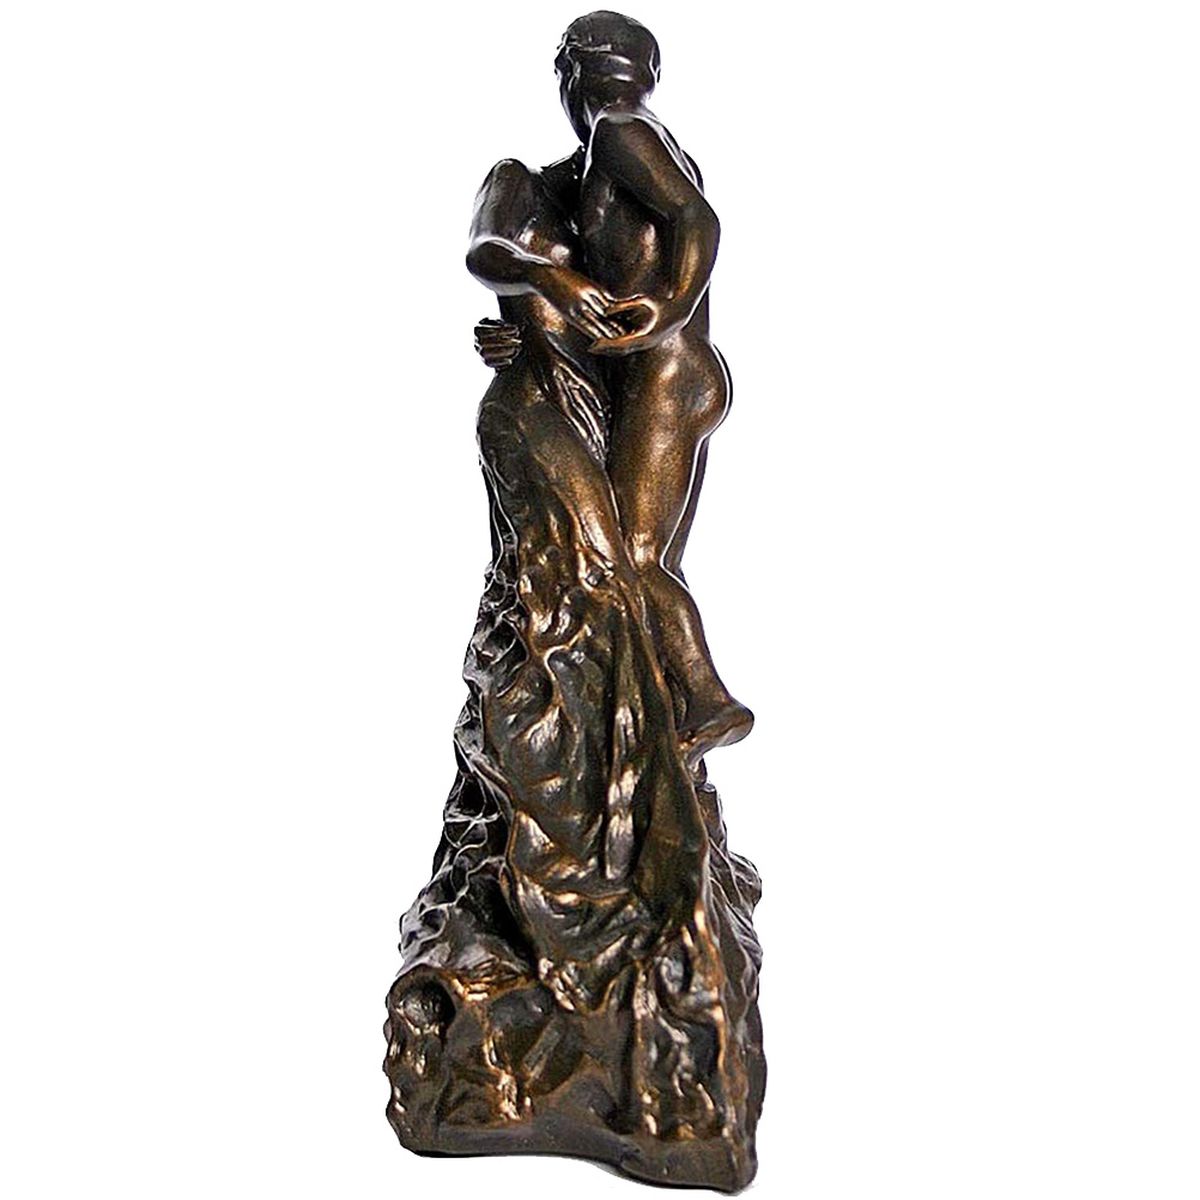 Figurine reproduction La Valse de Camille Claudel 26.5 cm